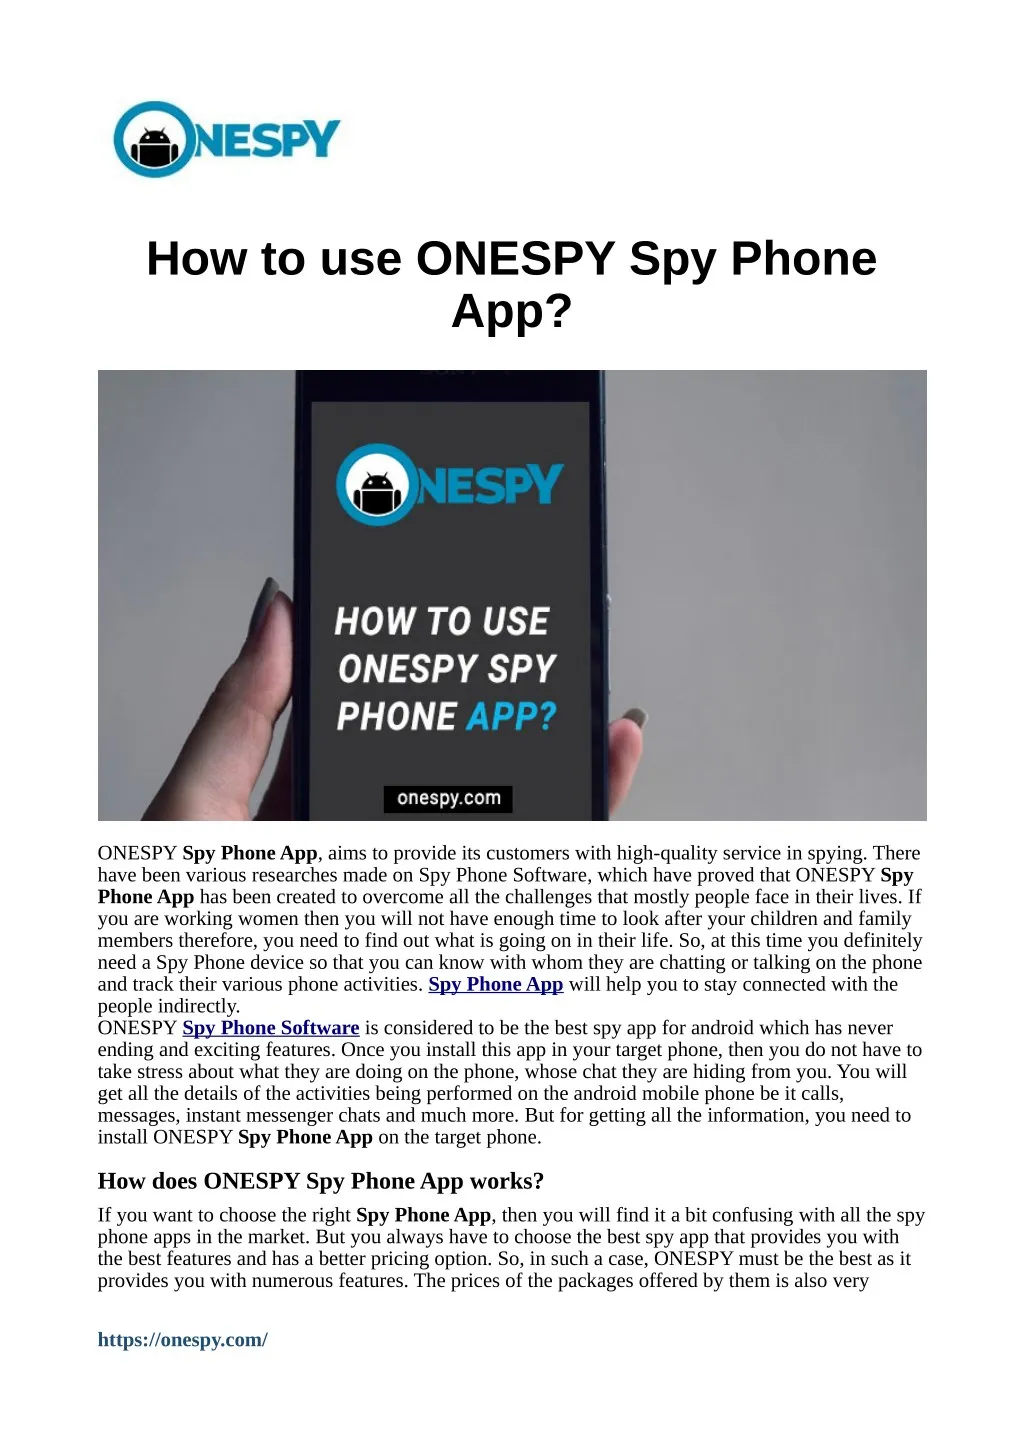 how to use onespy spy phone app